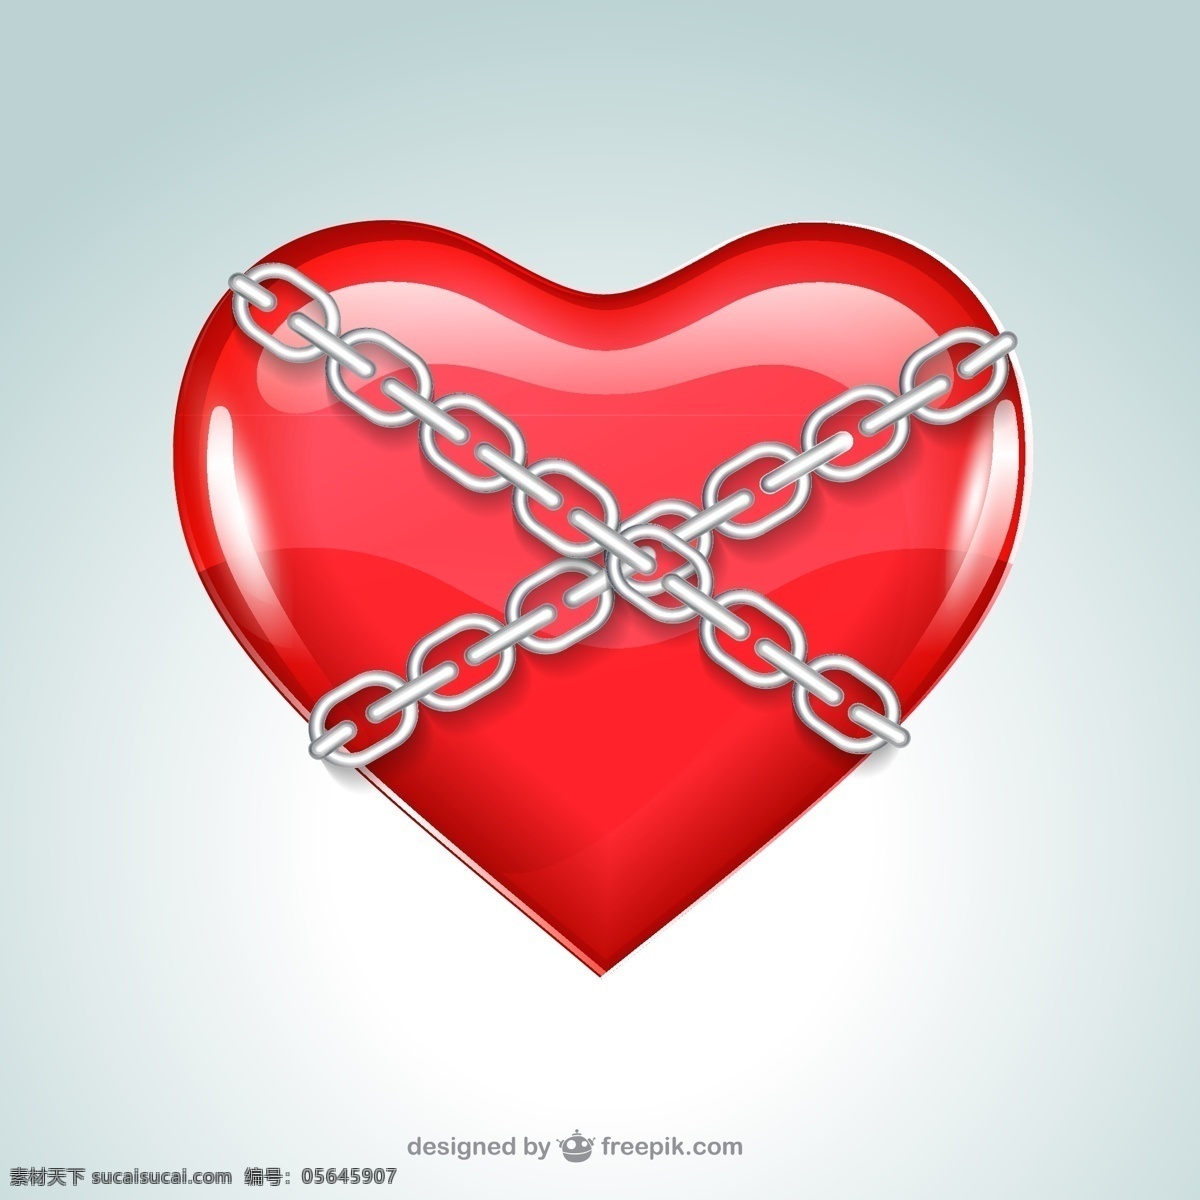 铁链 捆 住 爱心 红心 矢量图 格式 矢量 高清图片